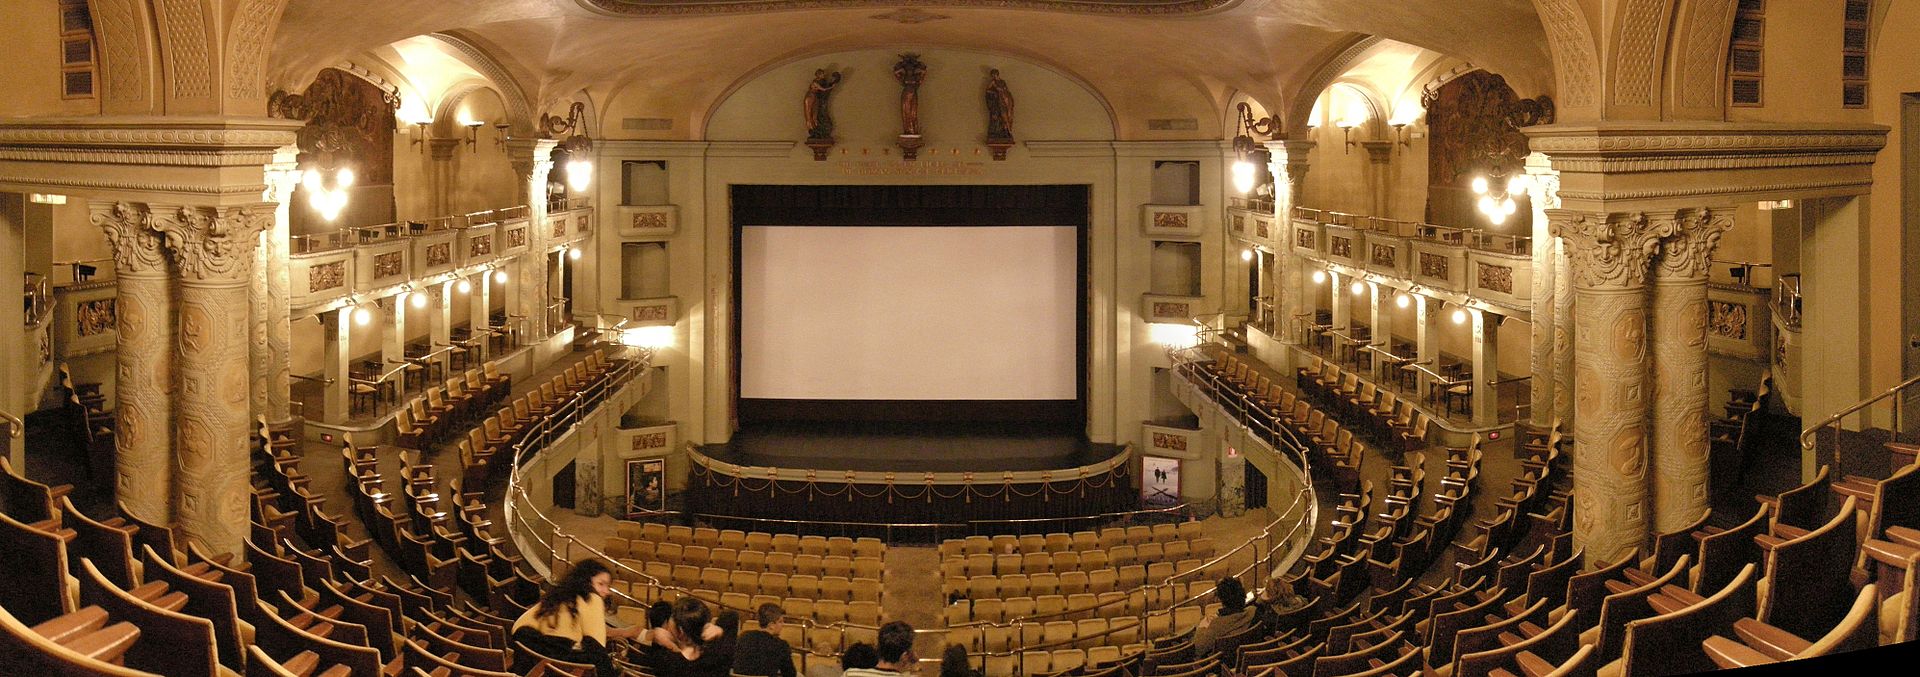 Cinema Odeon Firenze - Lado|B|erlin.